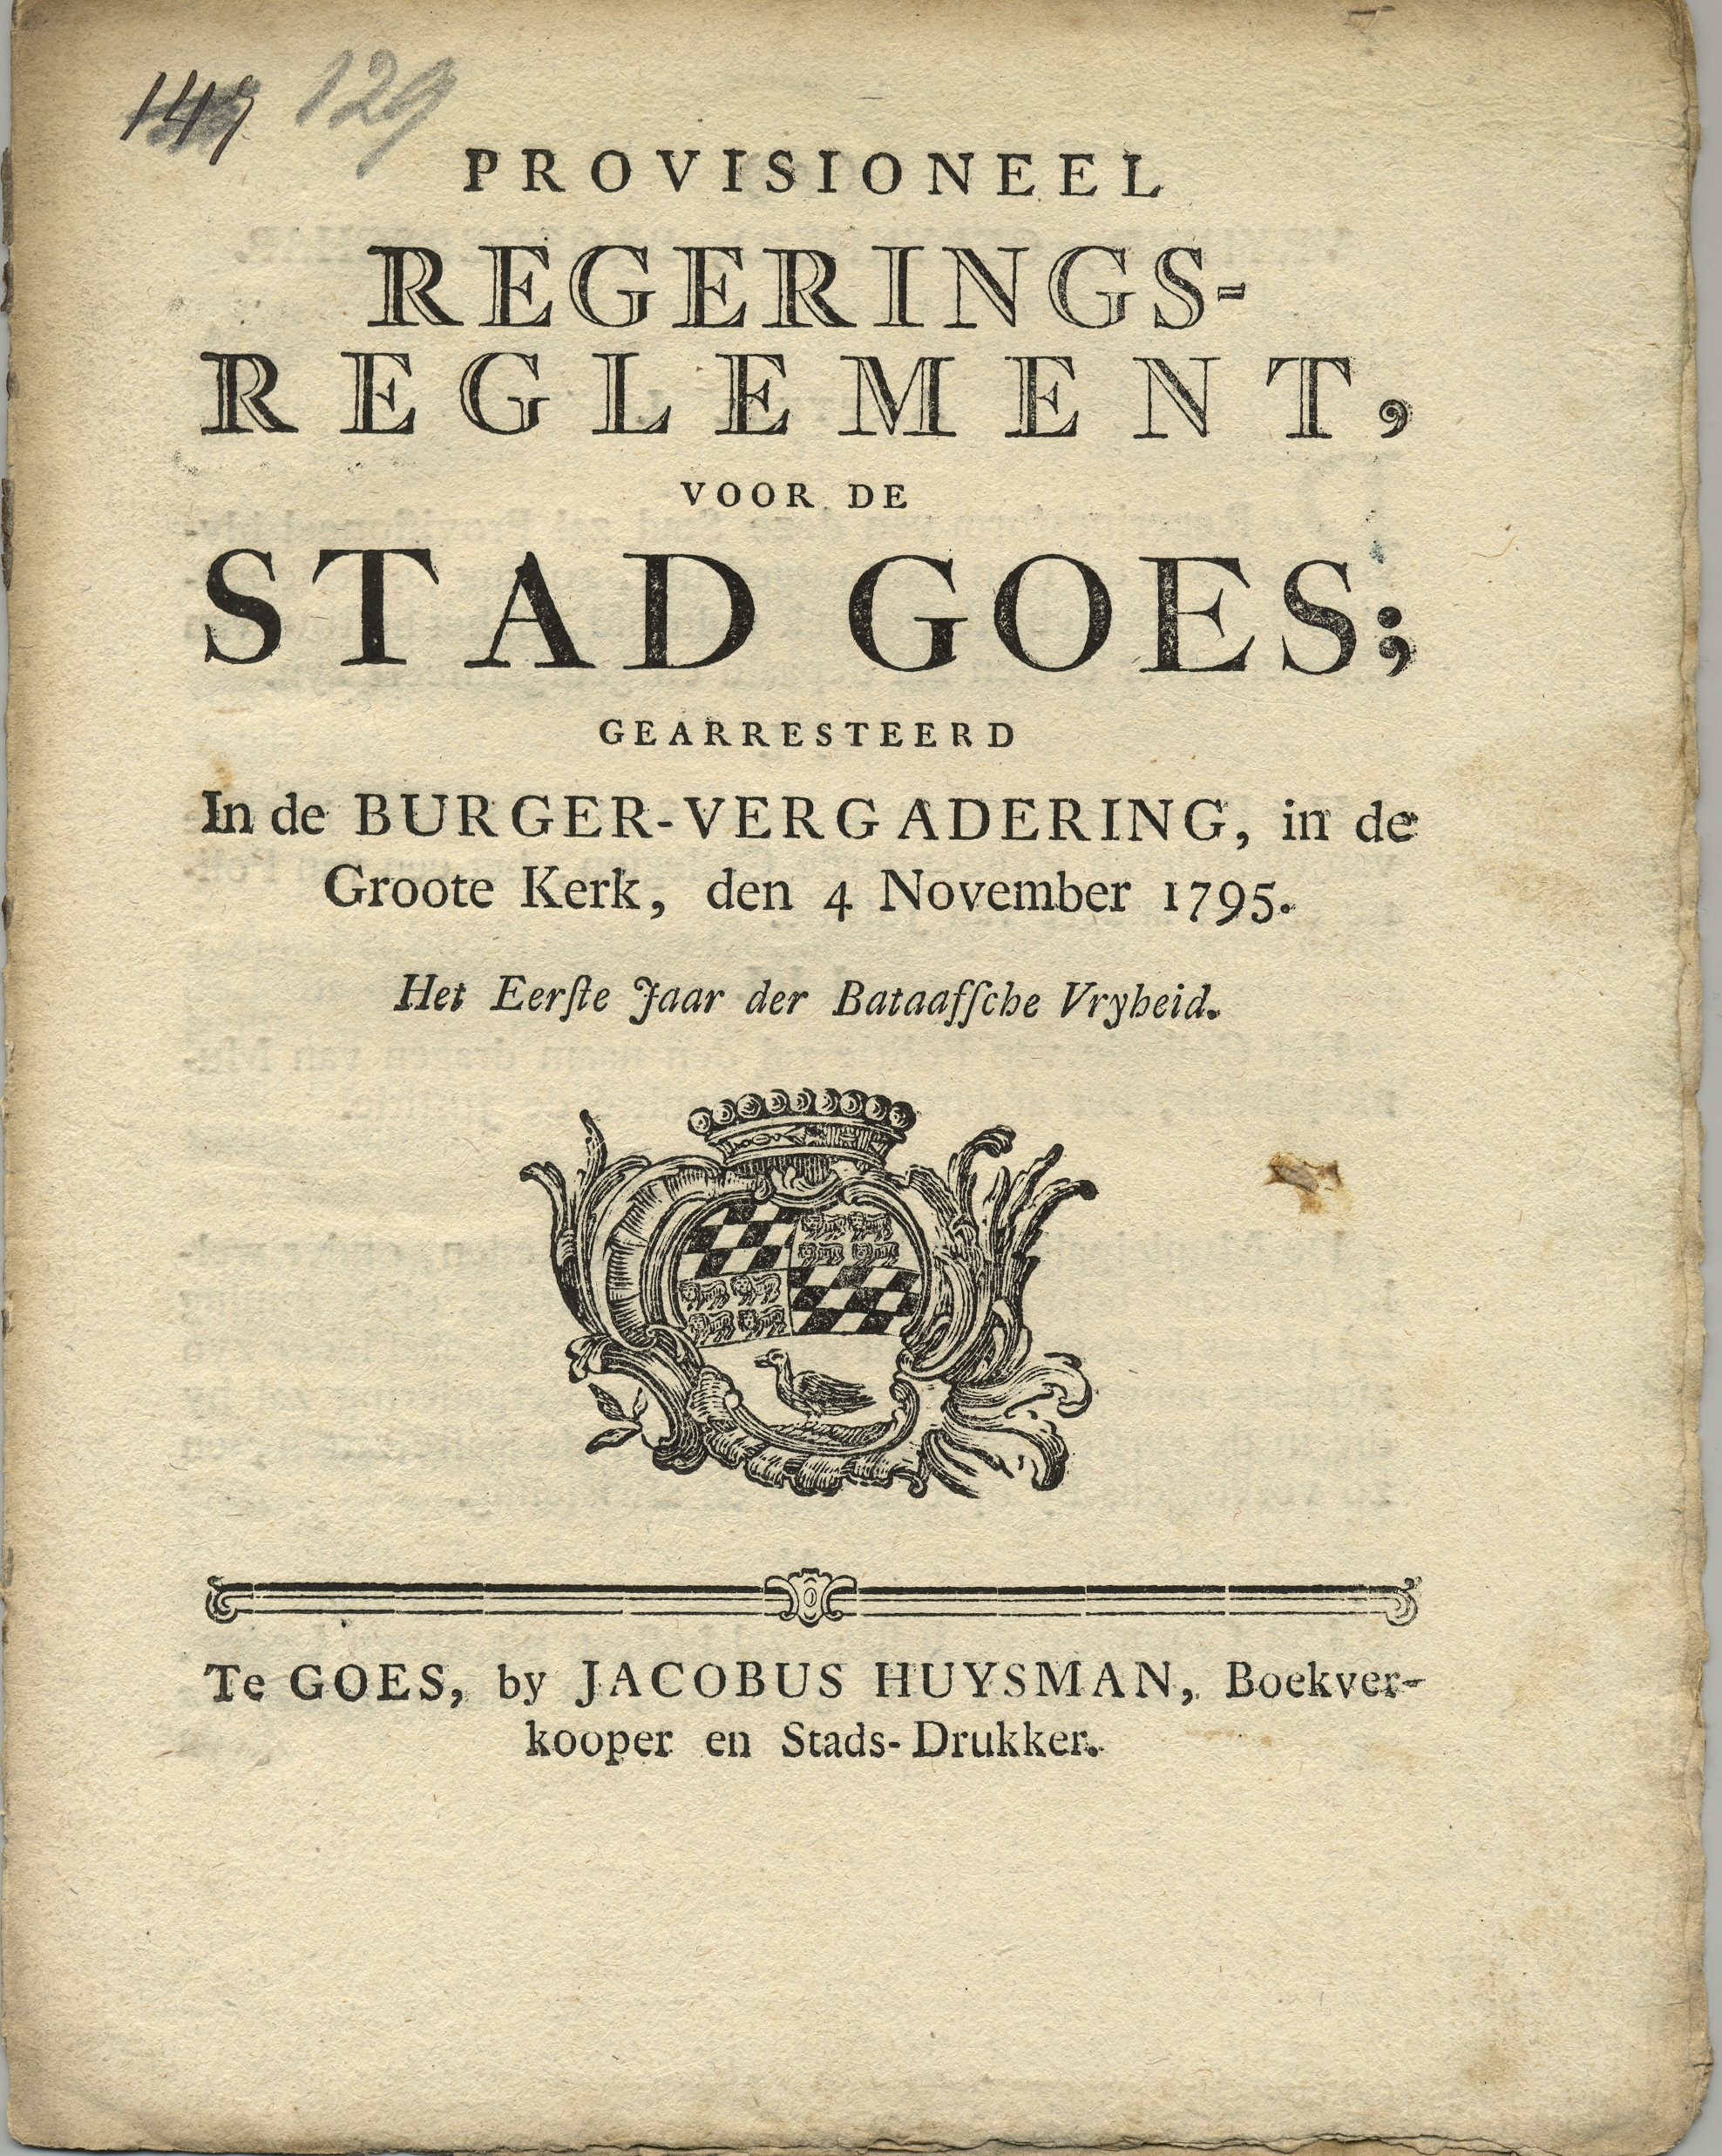 Titelblad van het voorlopig reglement op het stadsbestuur, 1795.